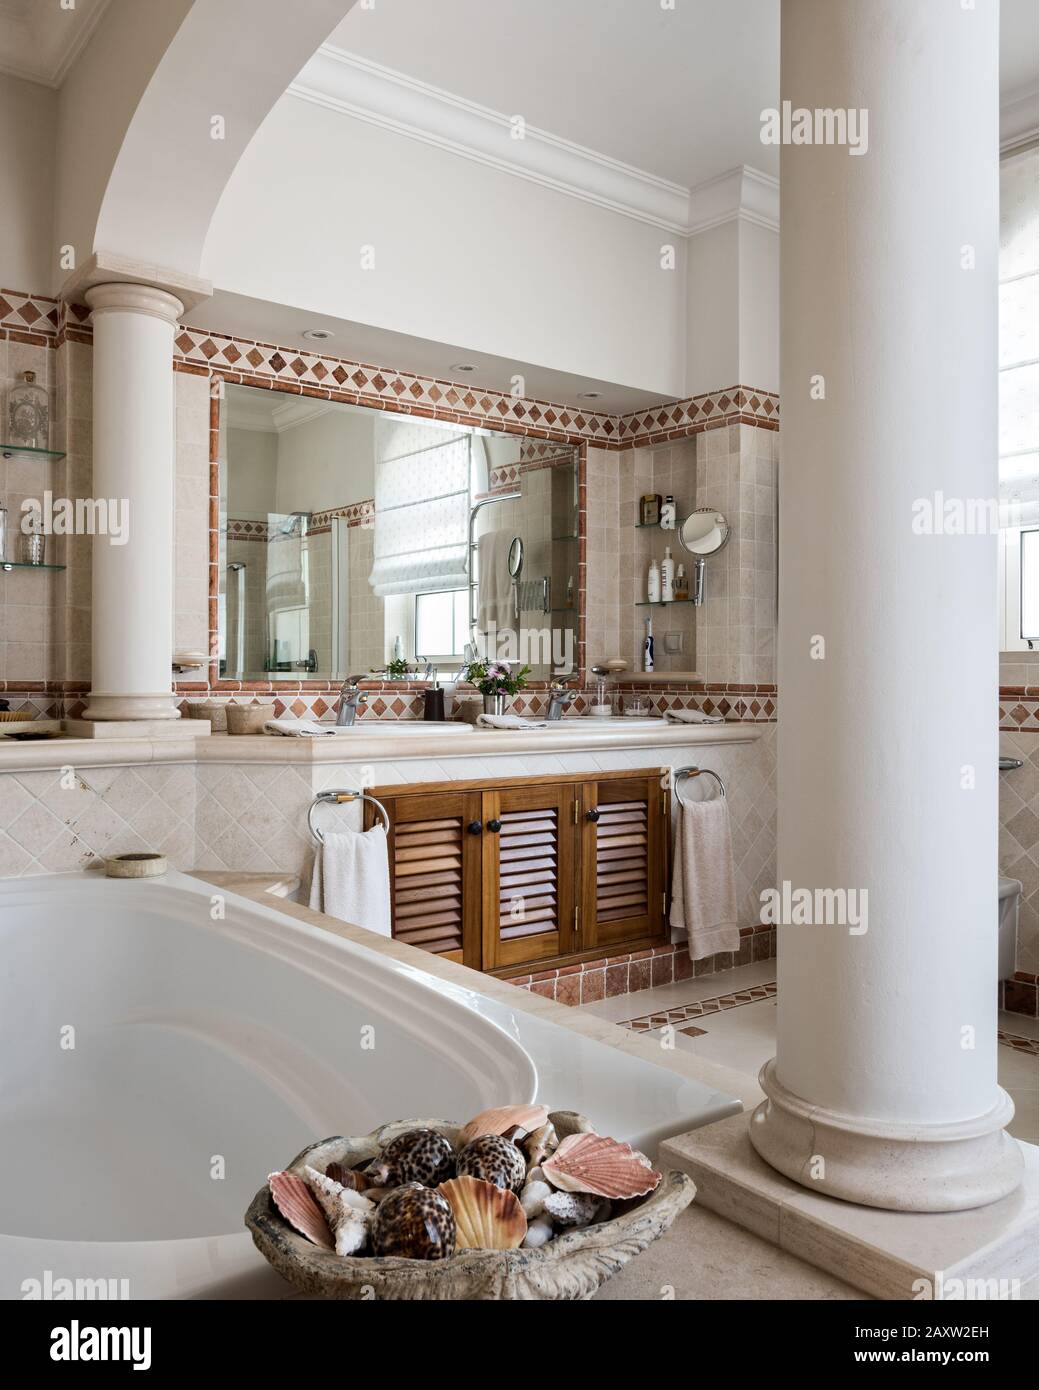 Baño de estilo clásico con columnas Foto de stock